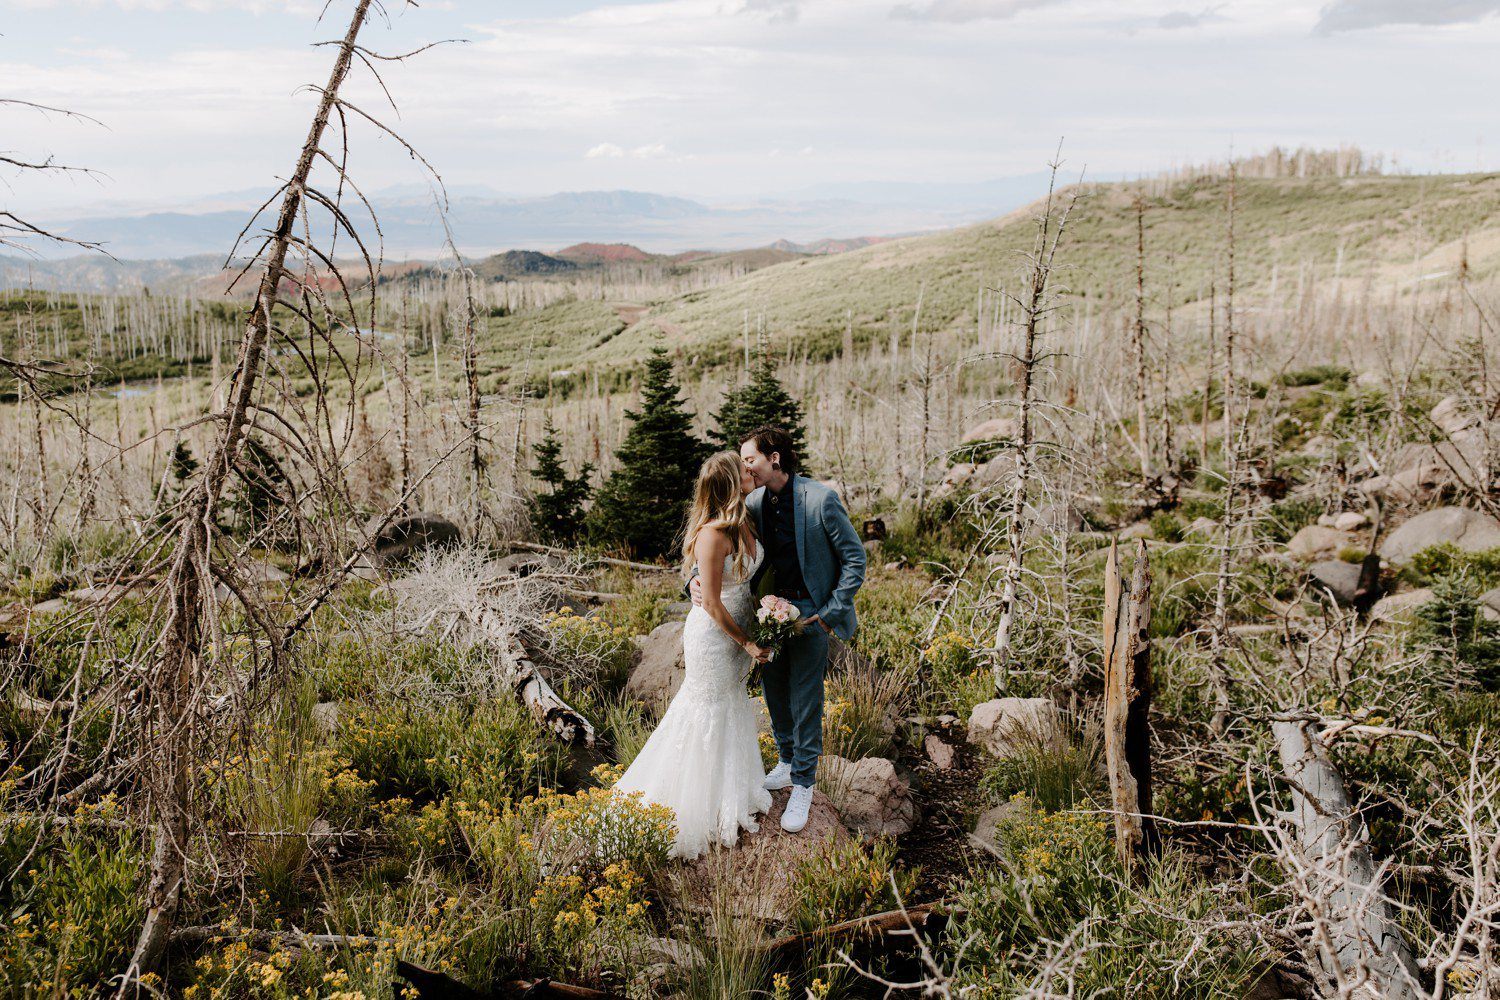 Brian Head Utah wedding photos in mountains.